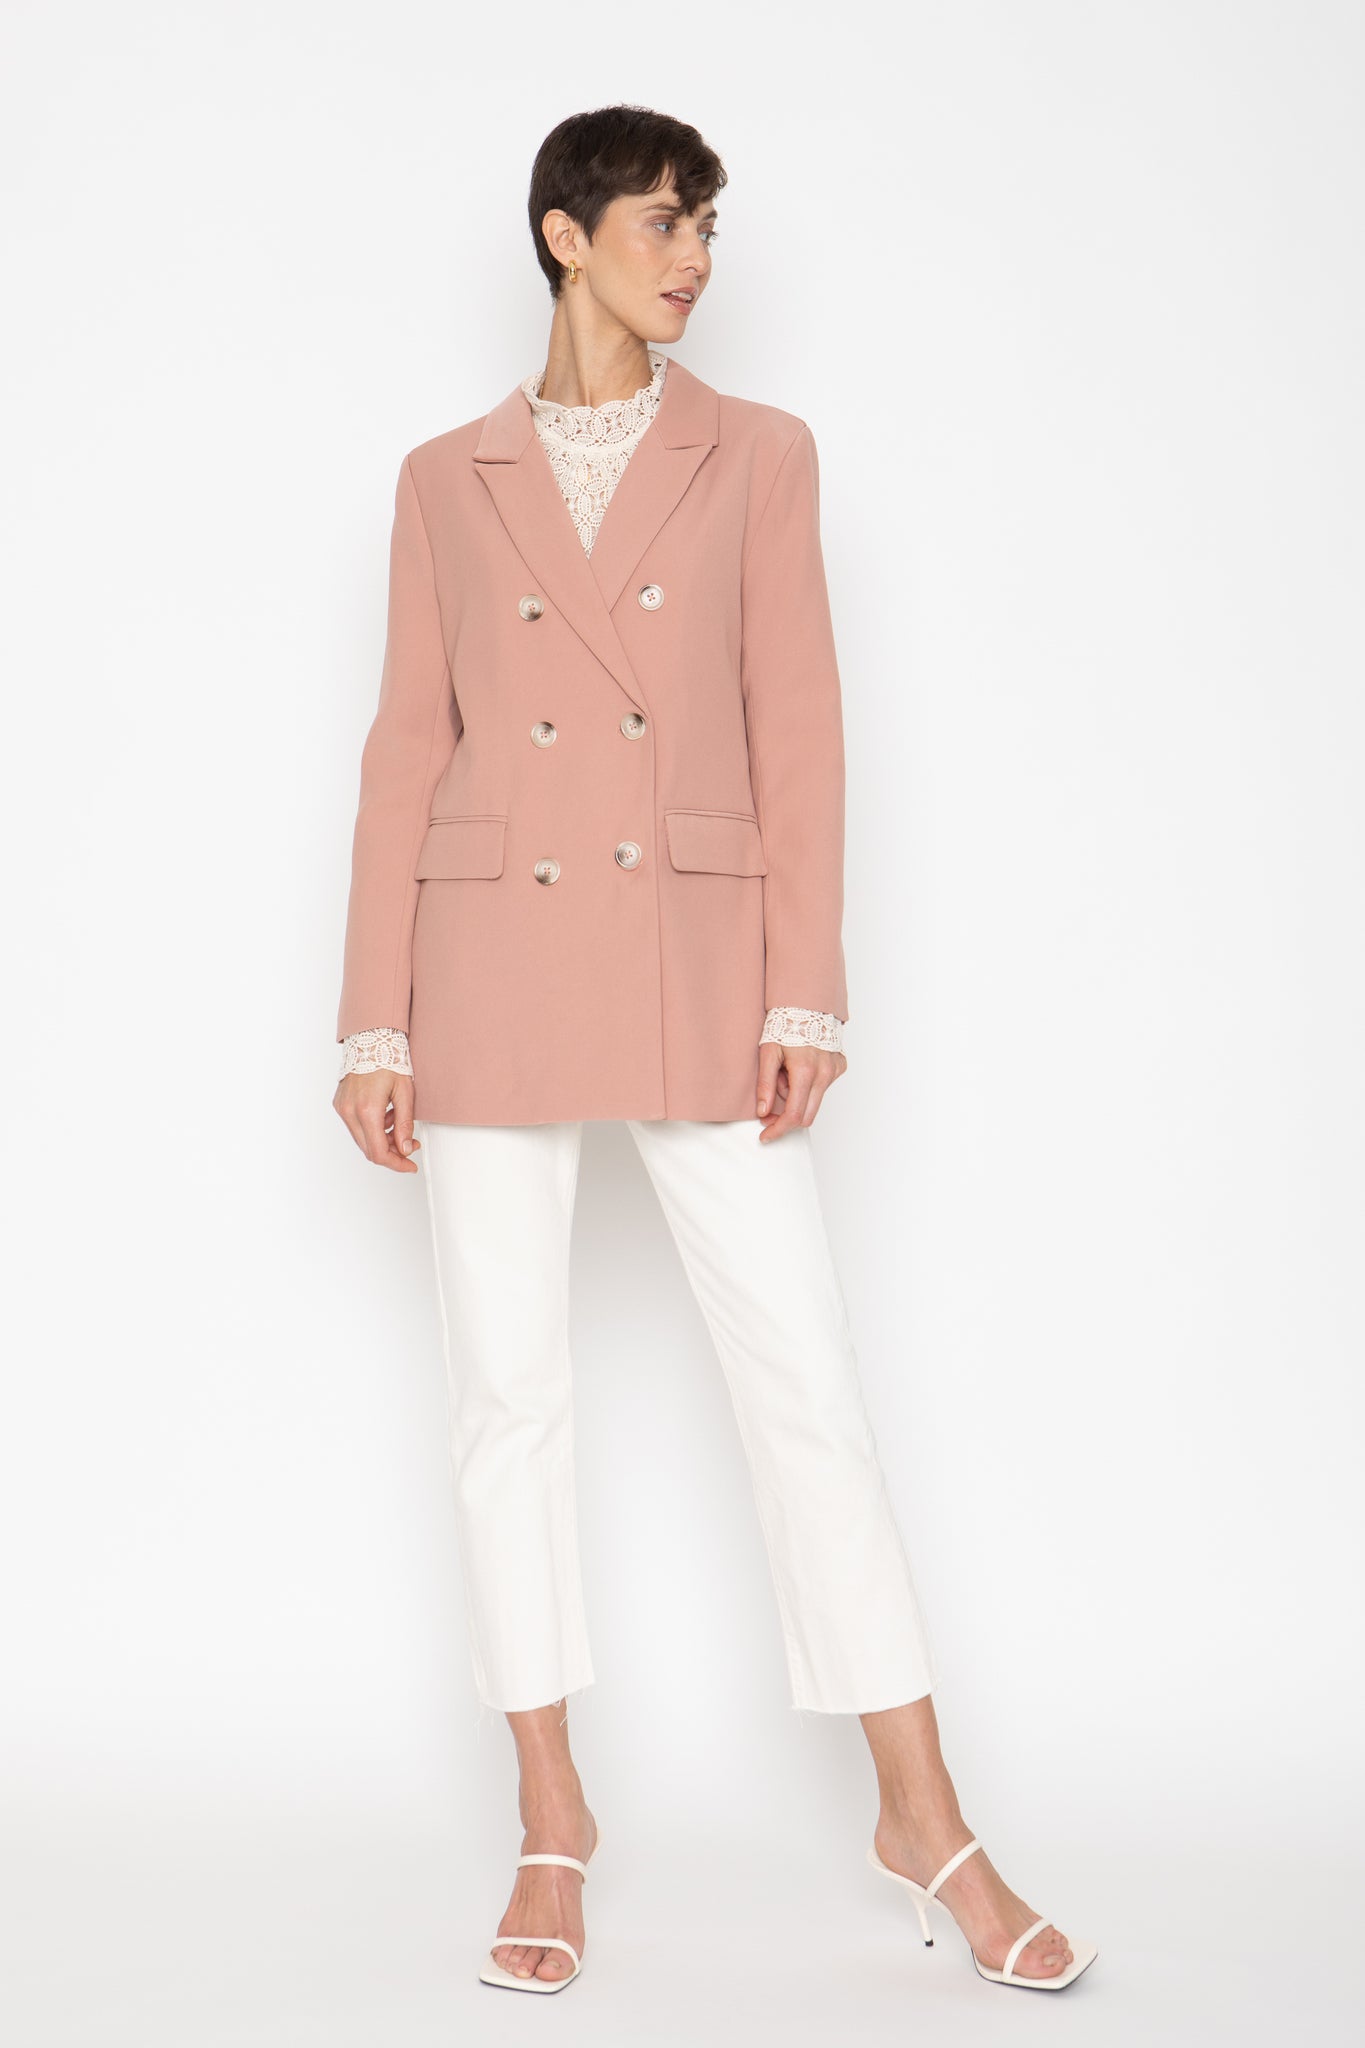 Zara - Zara hot pink blazer on Designer Wardrobe